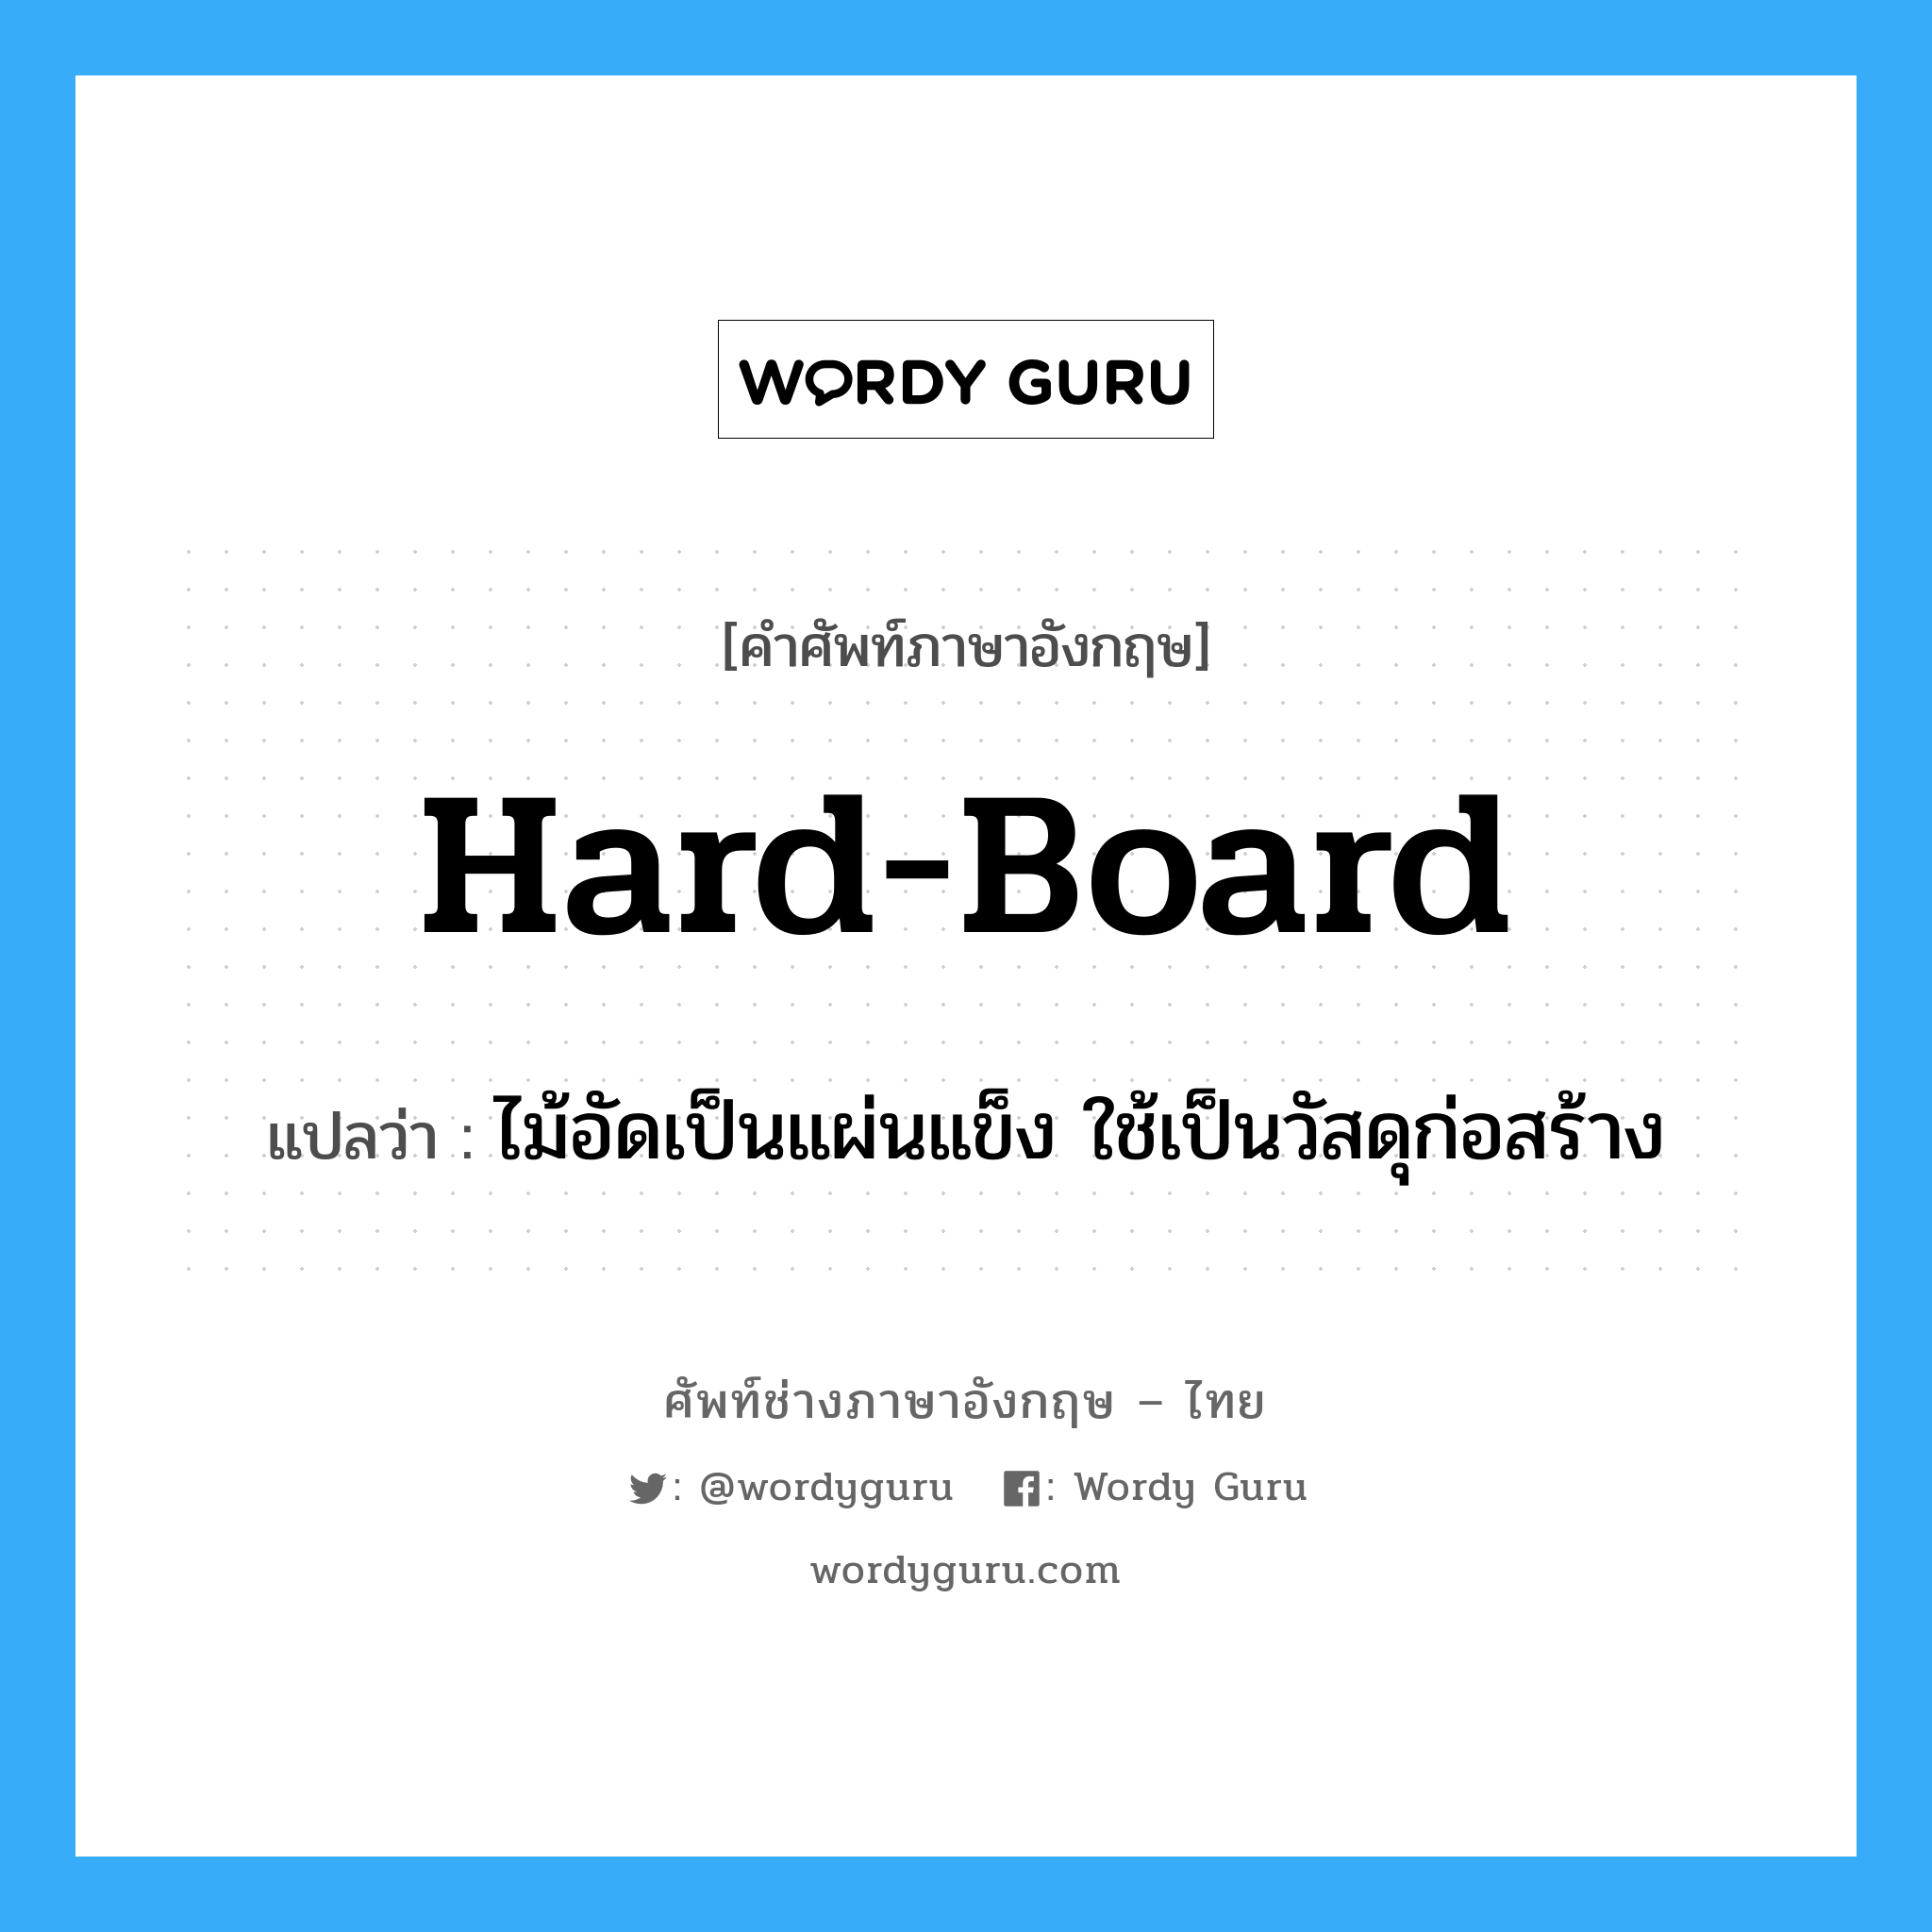 hard-board แปลว่า?, คำศัพท์ช่างภาษาอังกฤษ - ไทย hard-board คำศัพท์ภาษาอังกฤษ hard-board แปลว่า ไม้อัดเป็นแผ่นแข็ง ใช้เป็นวัสดุก่อสร้าง